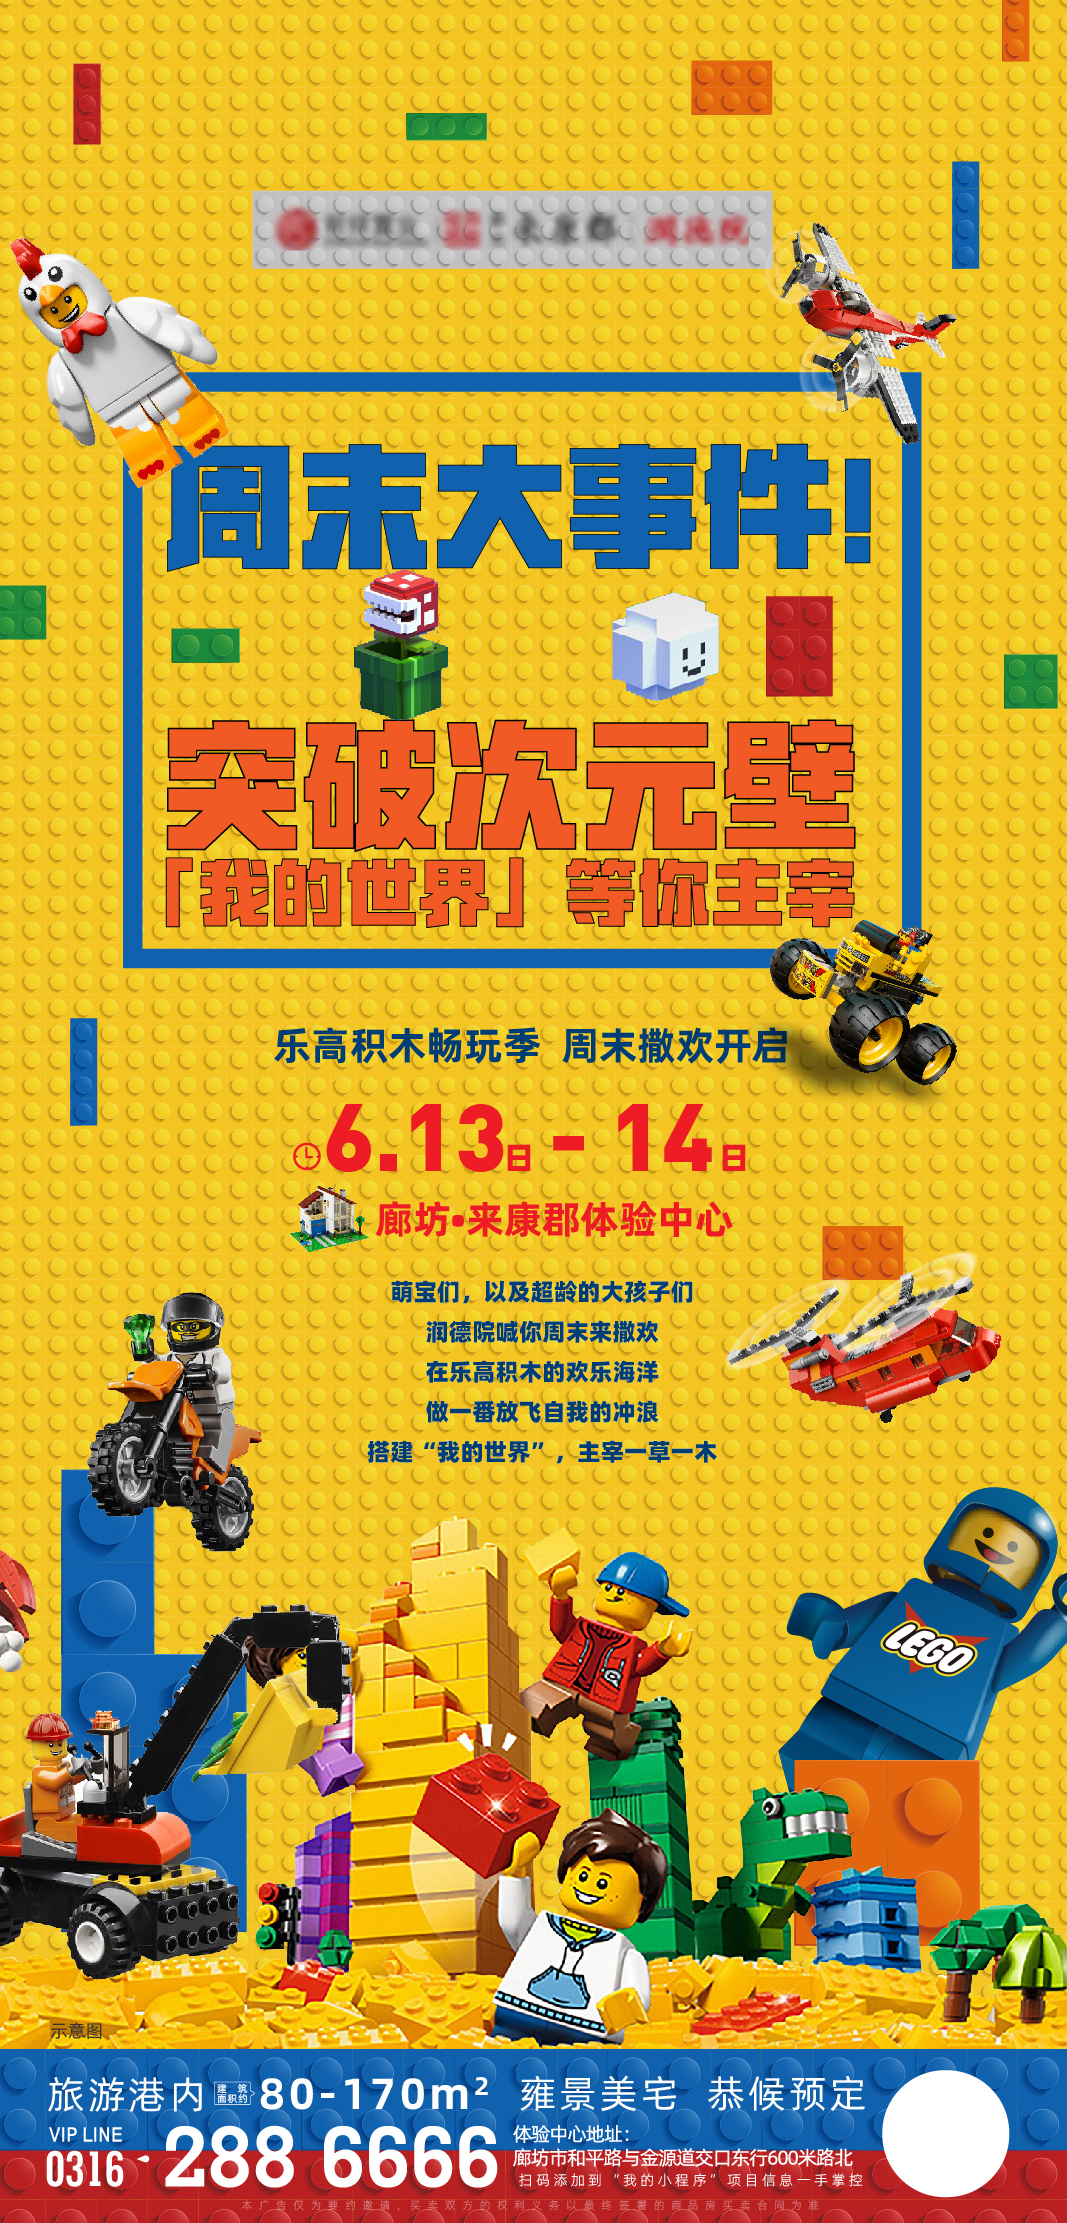 乐高玩具活动展板 周末活动乐高活动 地产乐高积木玩具暖场系列海报